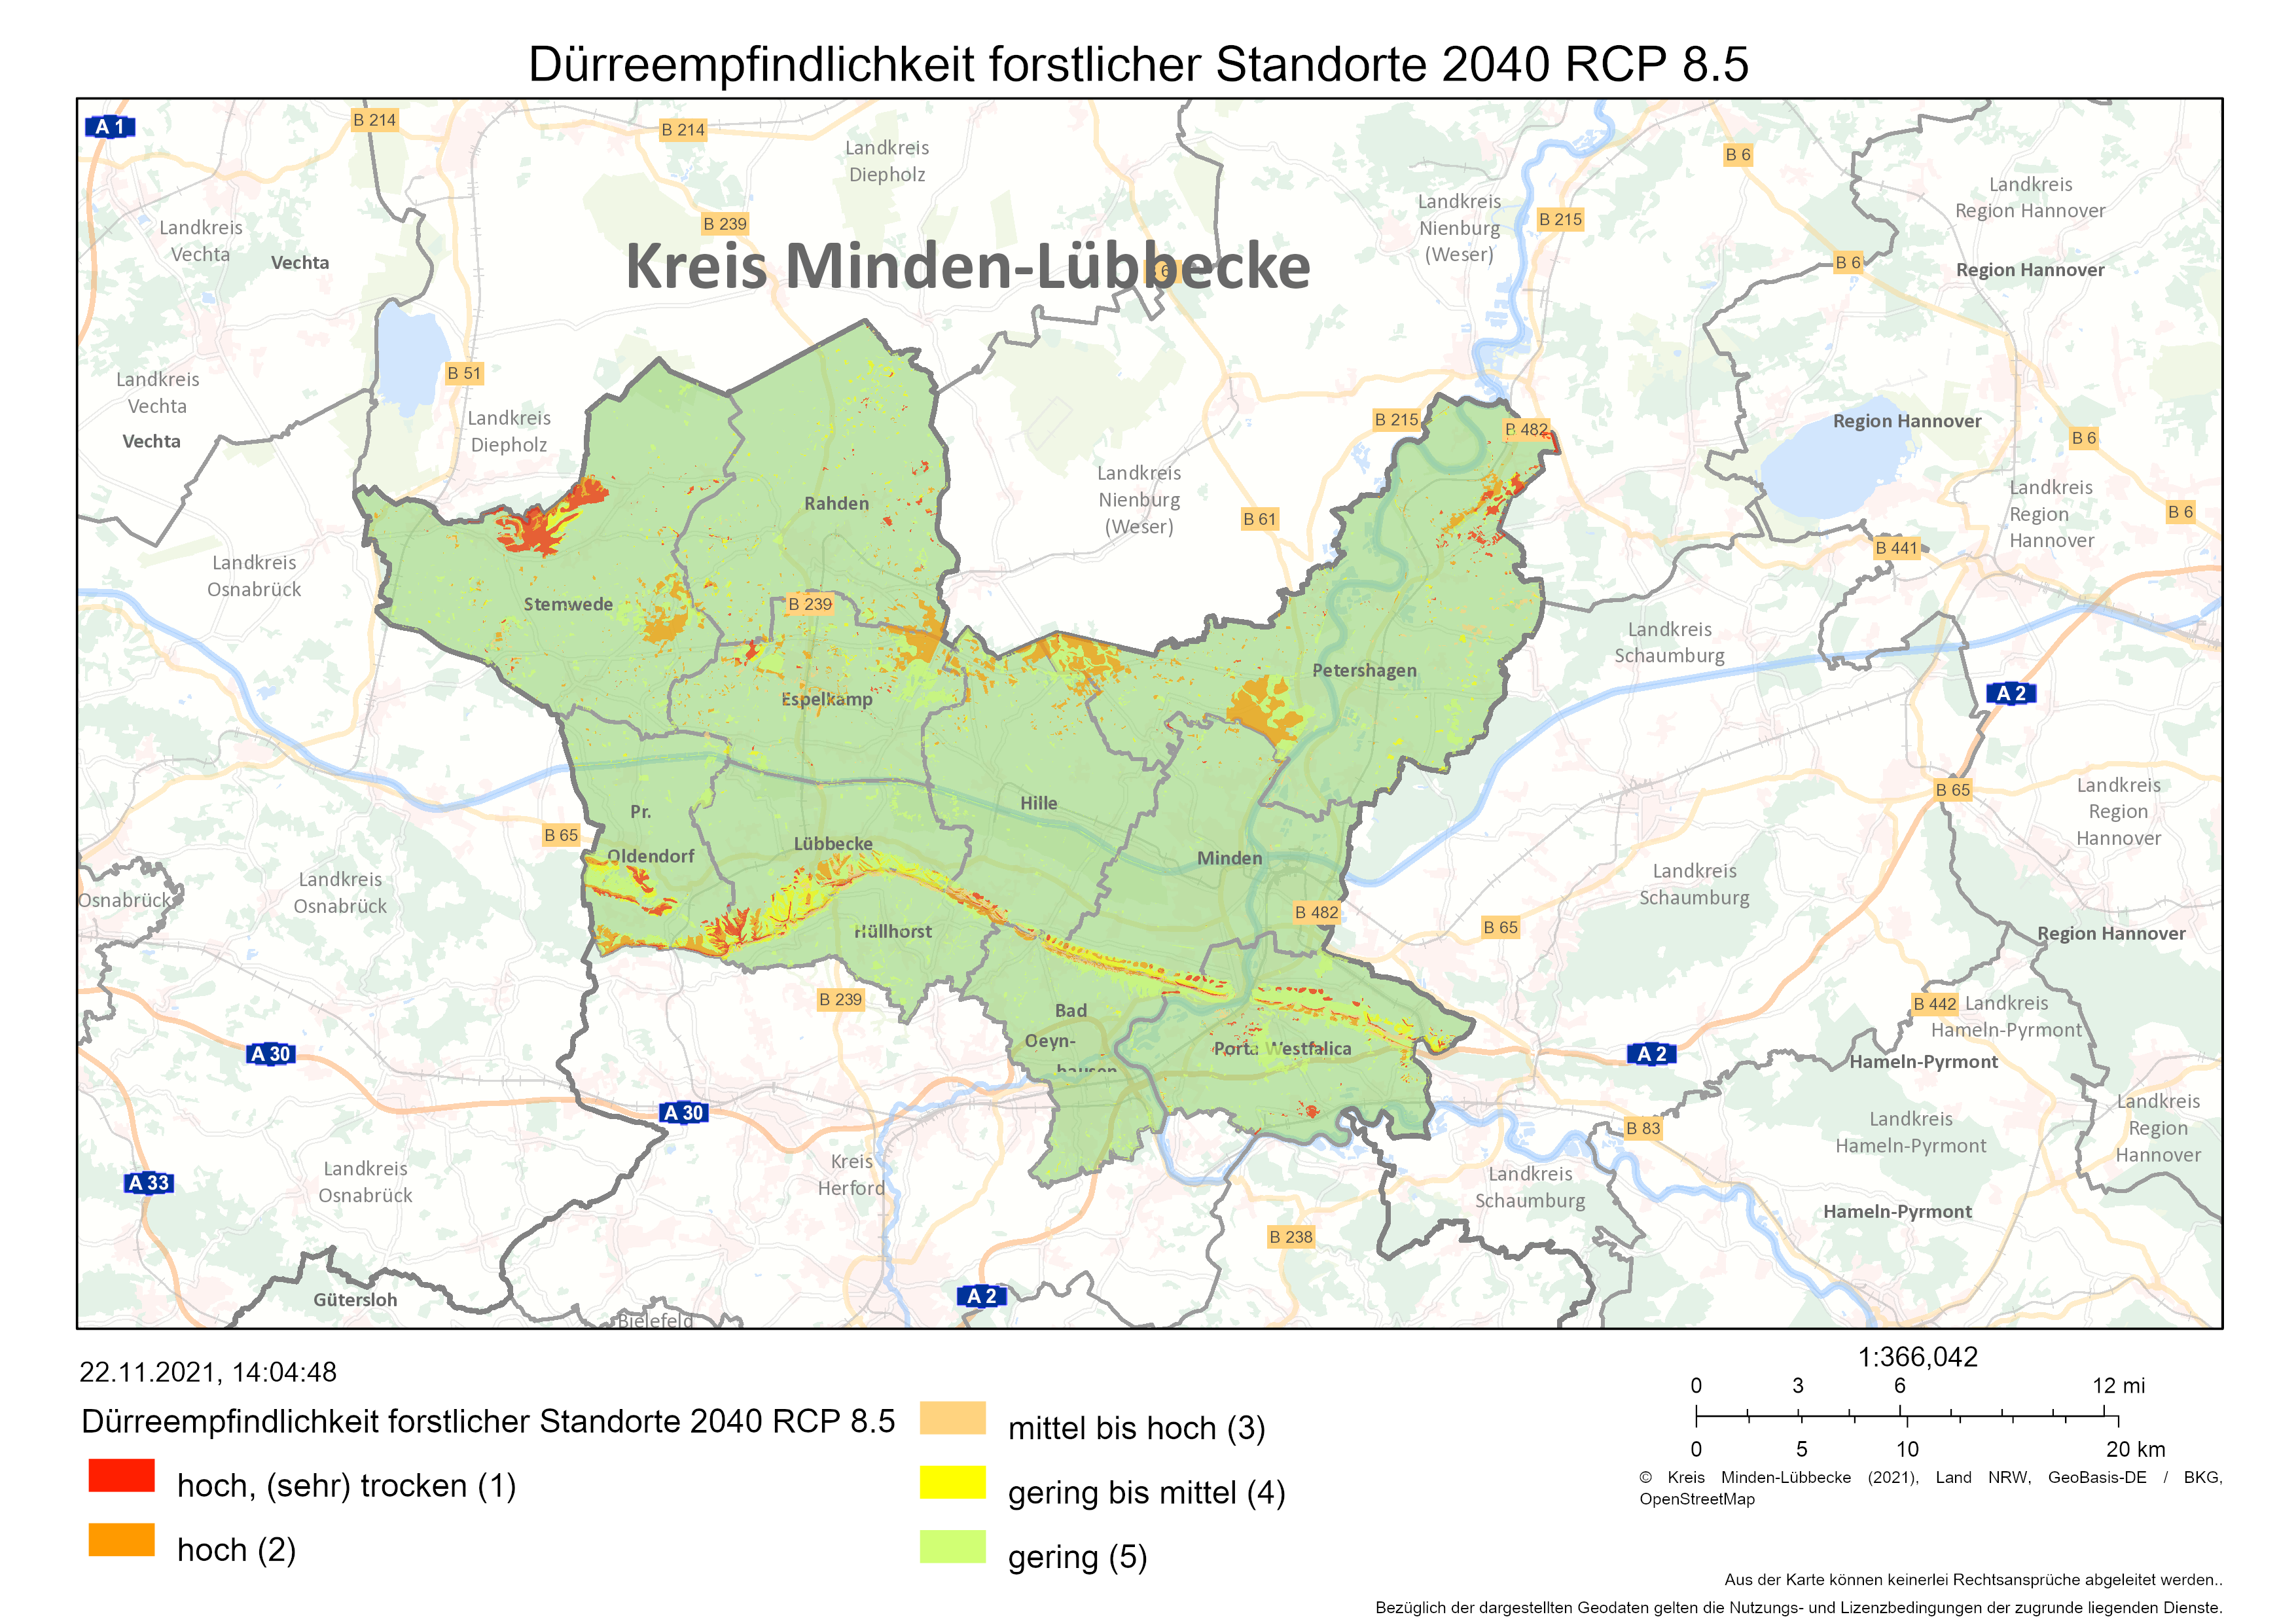 Dürreempfindlichkeit forstlicher Standorte 2040 | RCP 8.5 (Quelle: Wald & Holz NRW, LANUV NRW & Kreis Minden-Lübbecke)